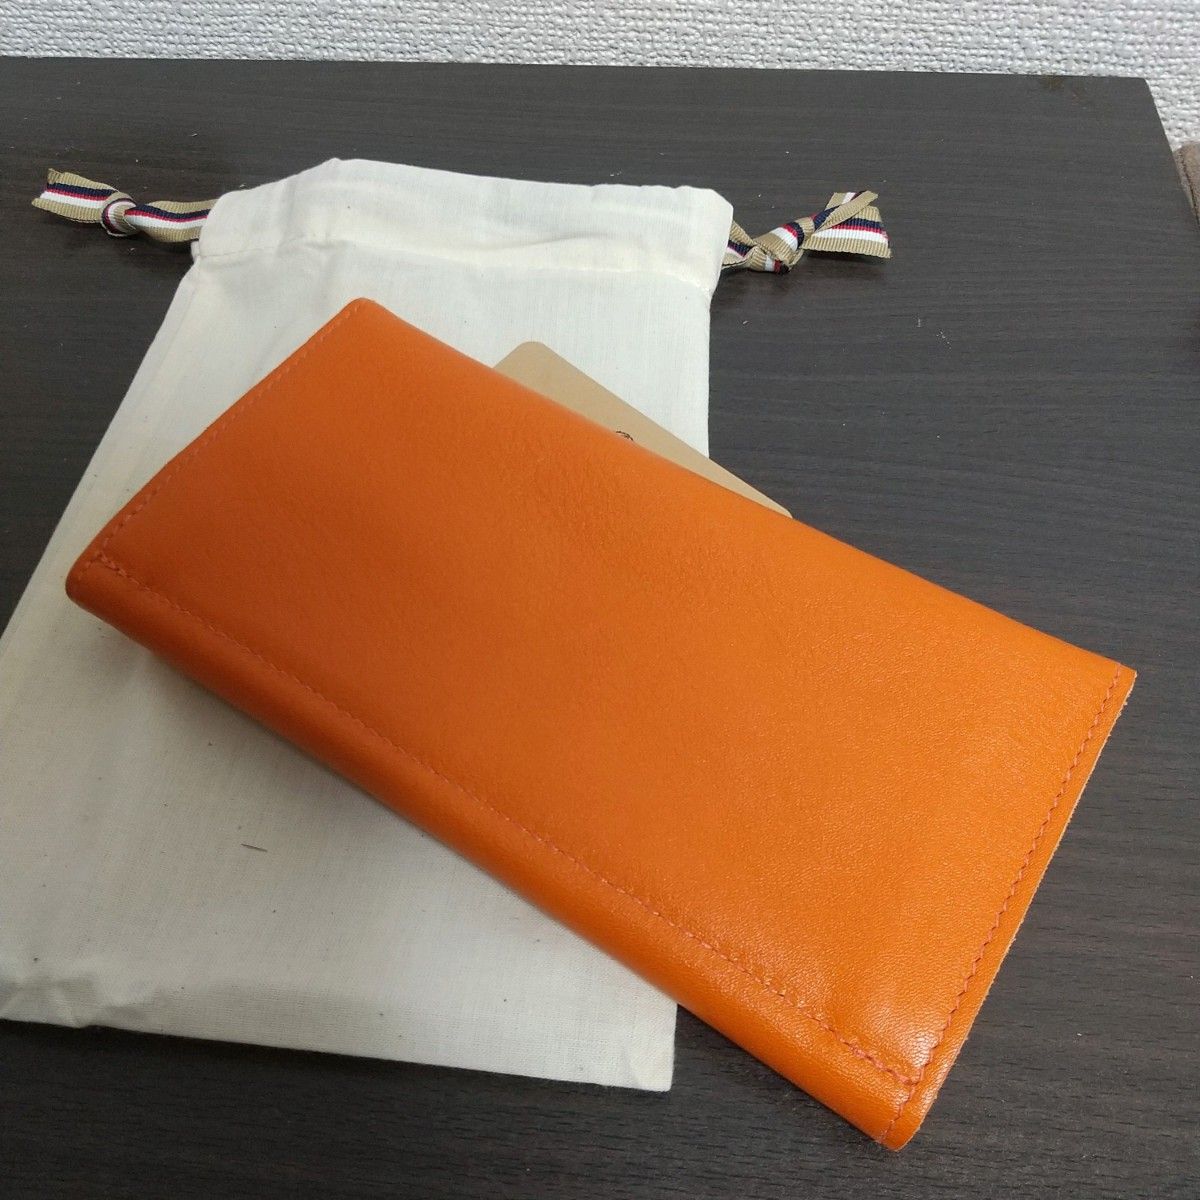 新品 イルビゾンテ 本革 レザー 財布 ウォレット オレンジ 橙